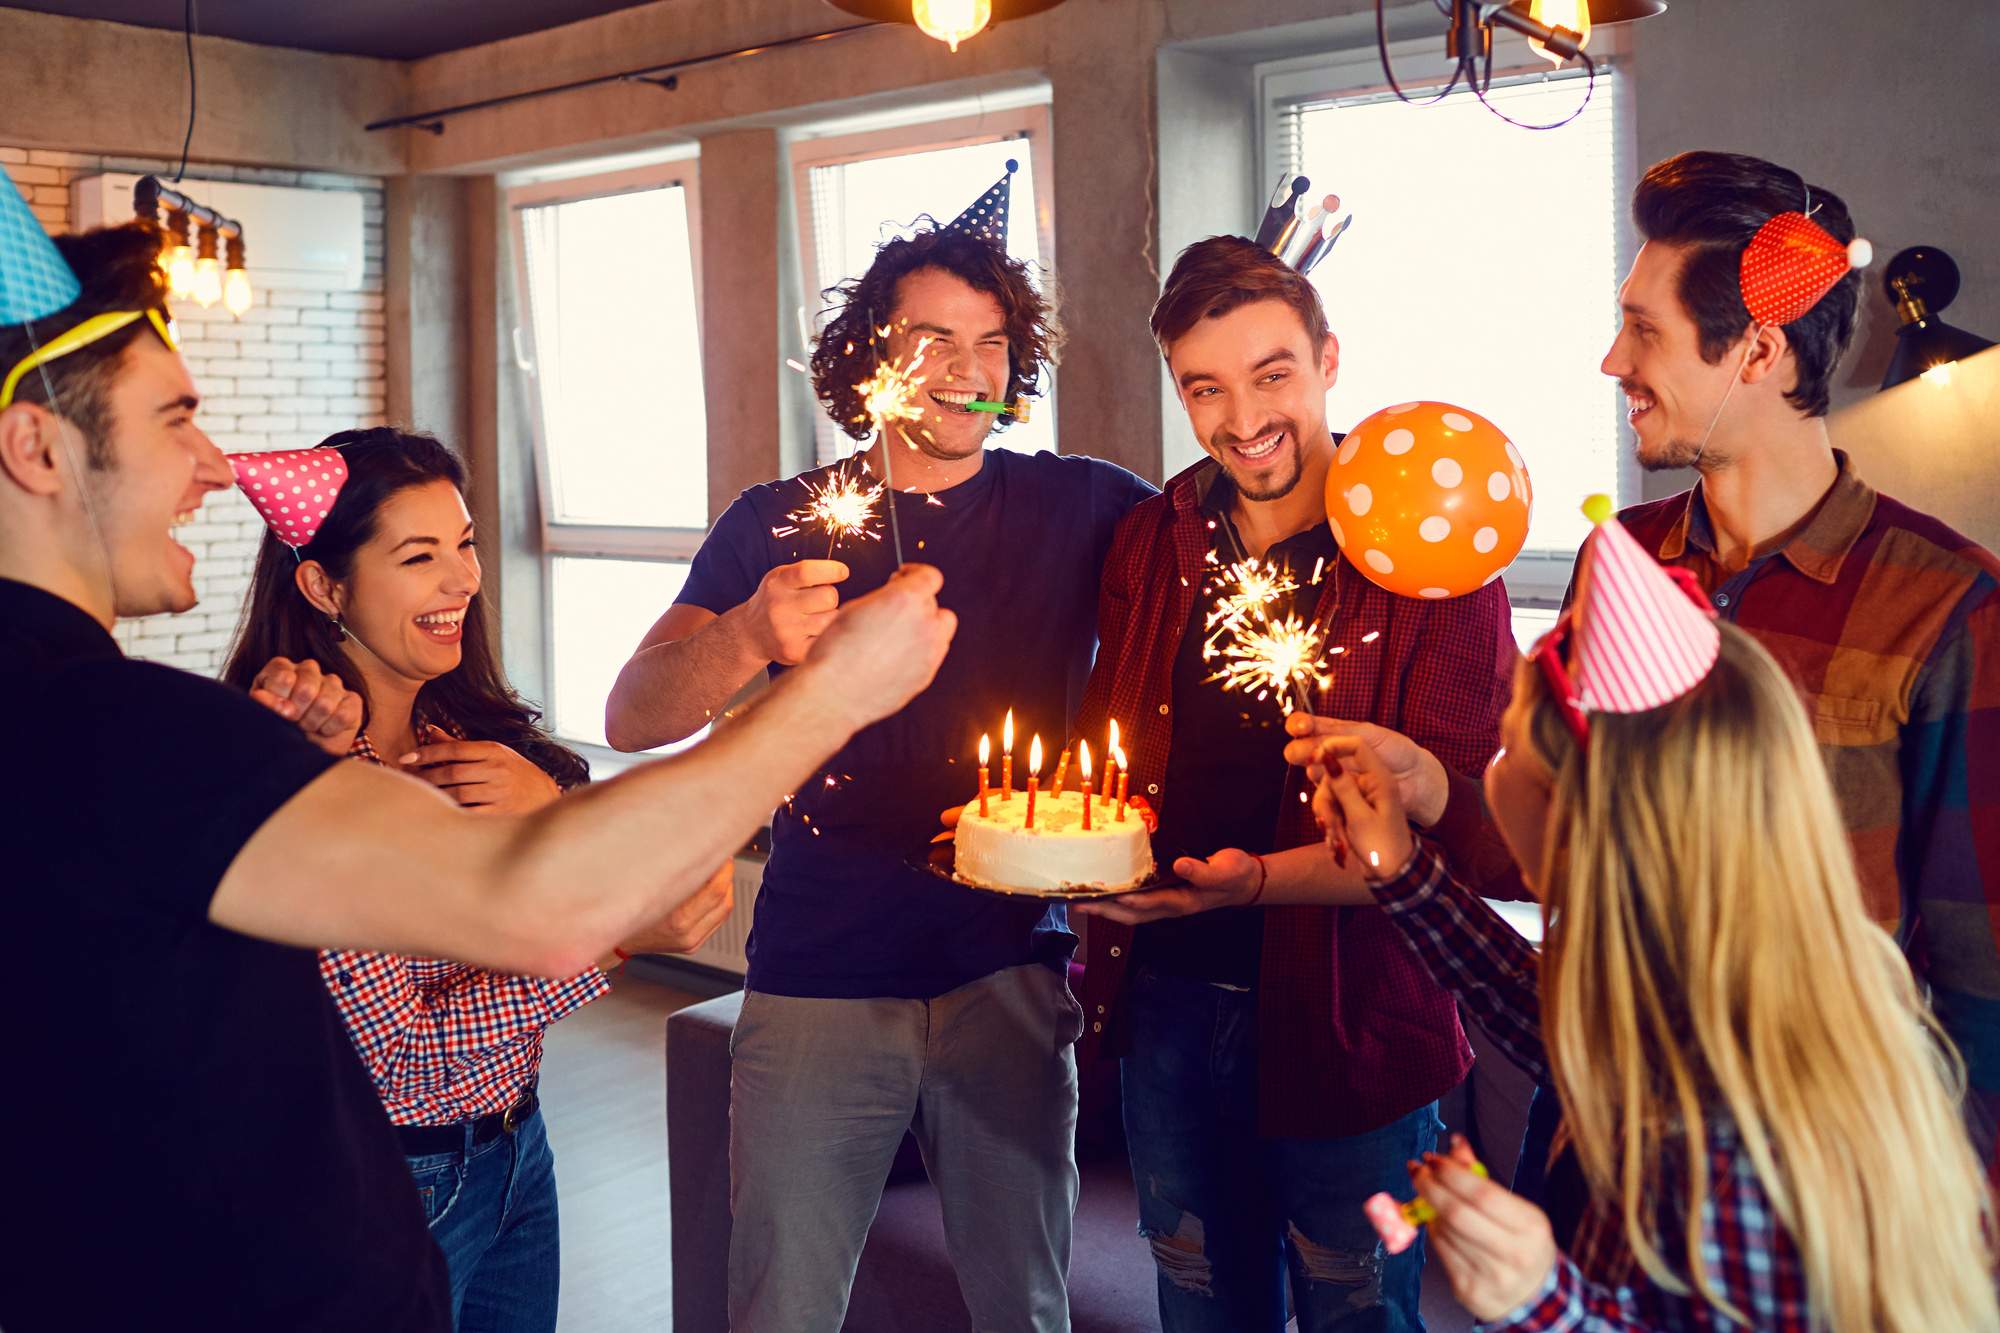 4 Unique Party Ideas for Your Next Celebration